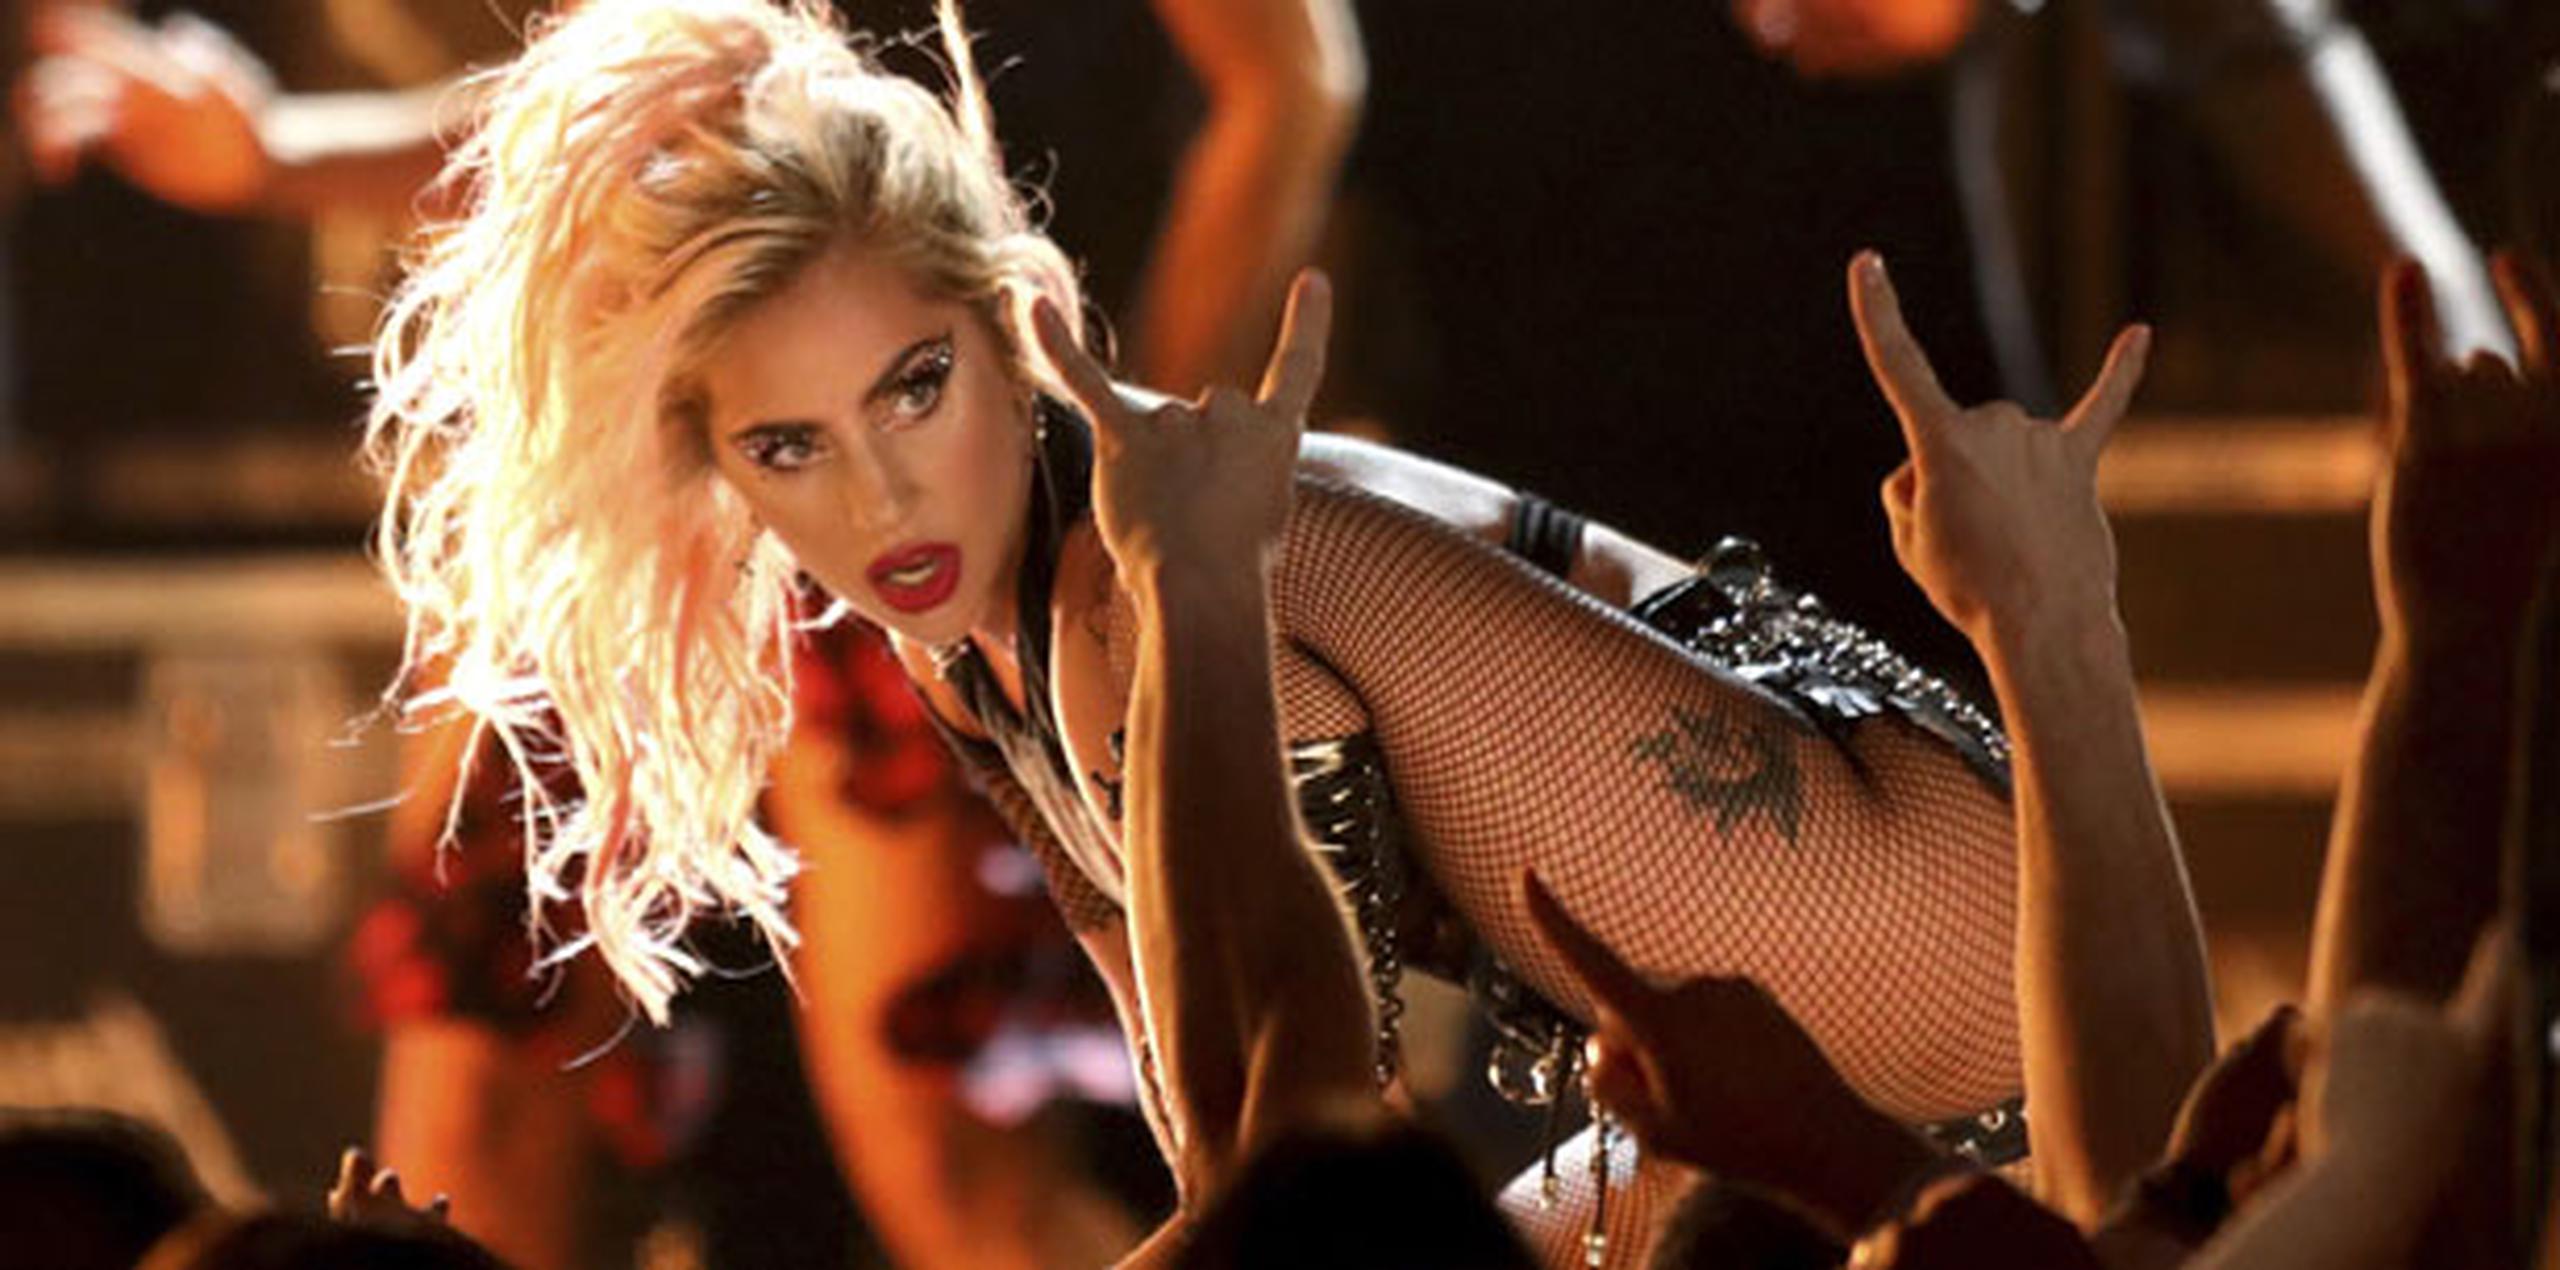 El pasado abril el festival de Coachella, que Gaga encabezó, la cantante lanzó "The Cure", una canción animada sobre sanación.  (AP)